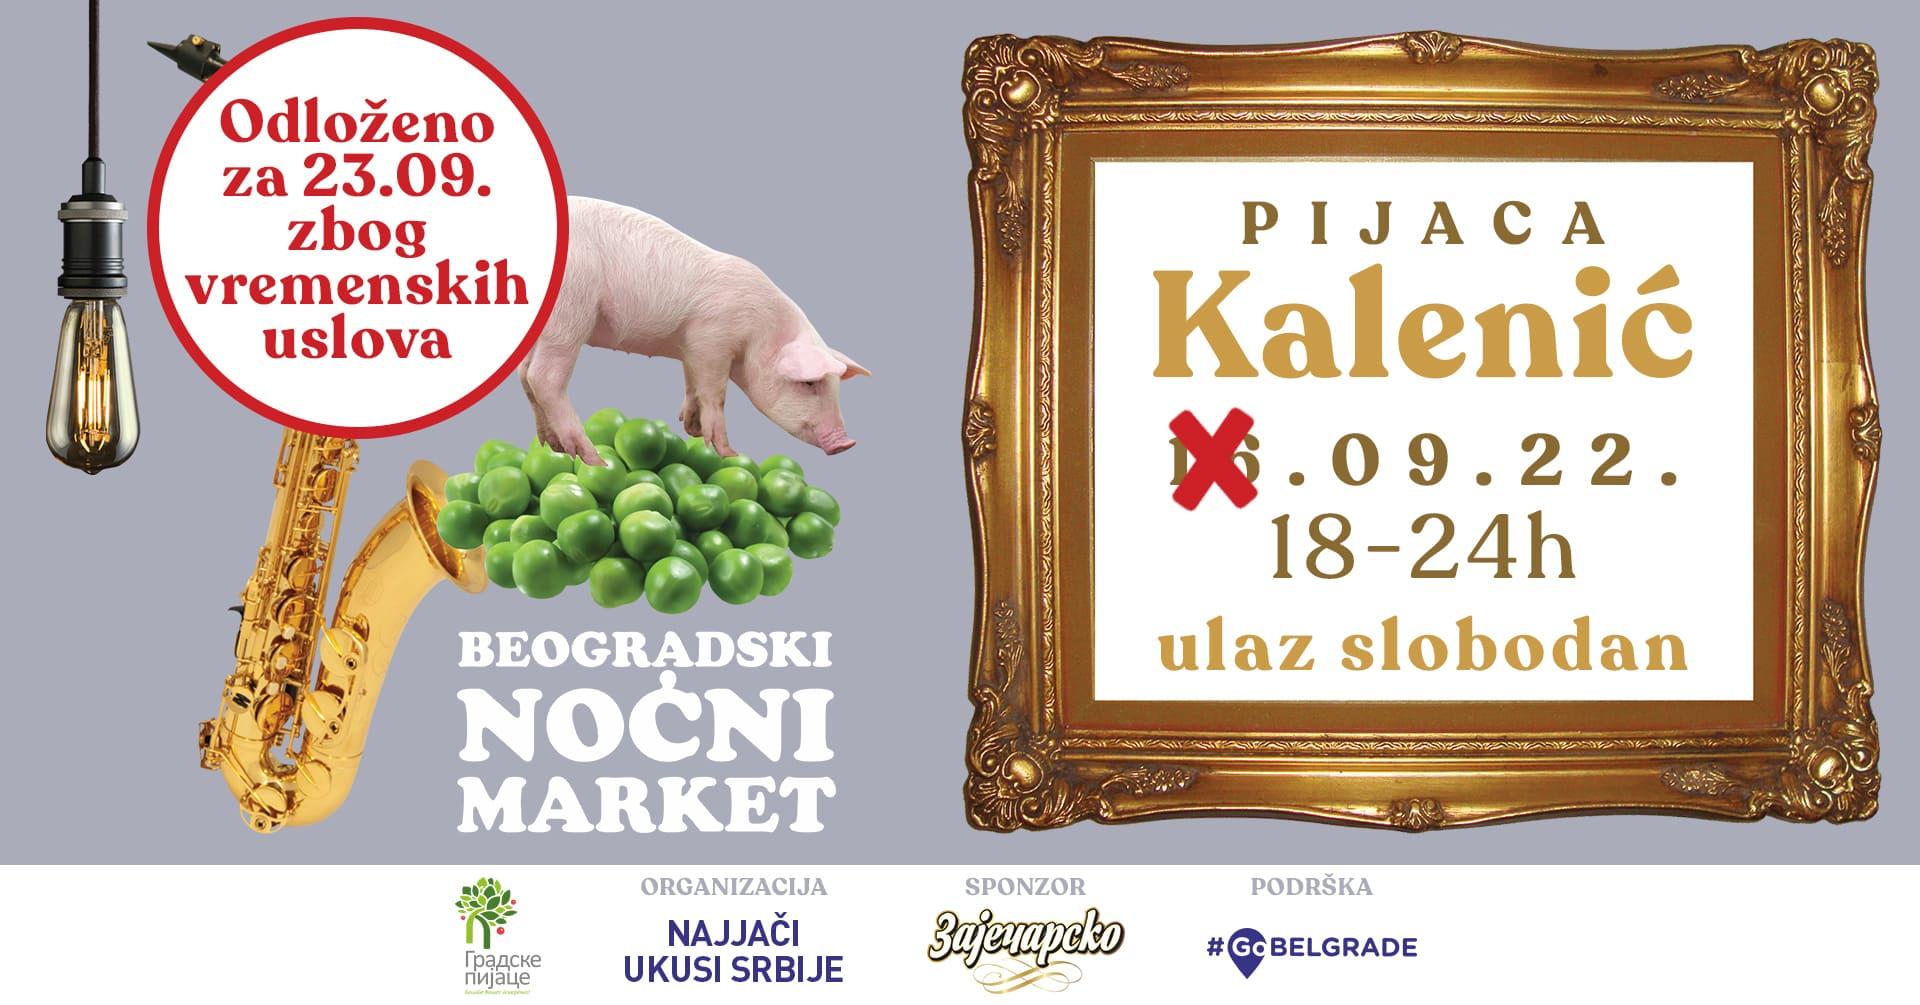 Belgrade Night Market - Kalenic Market 23 Sep 2022